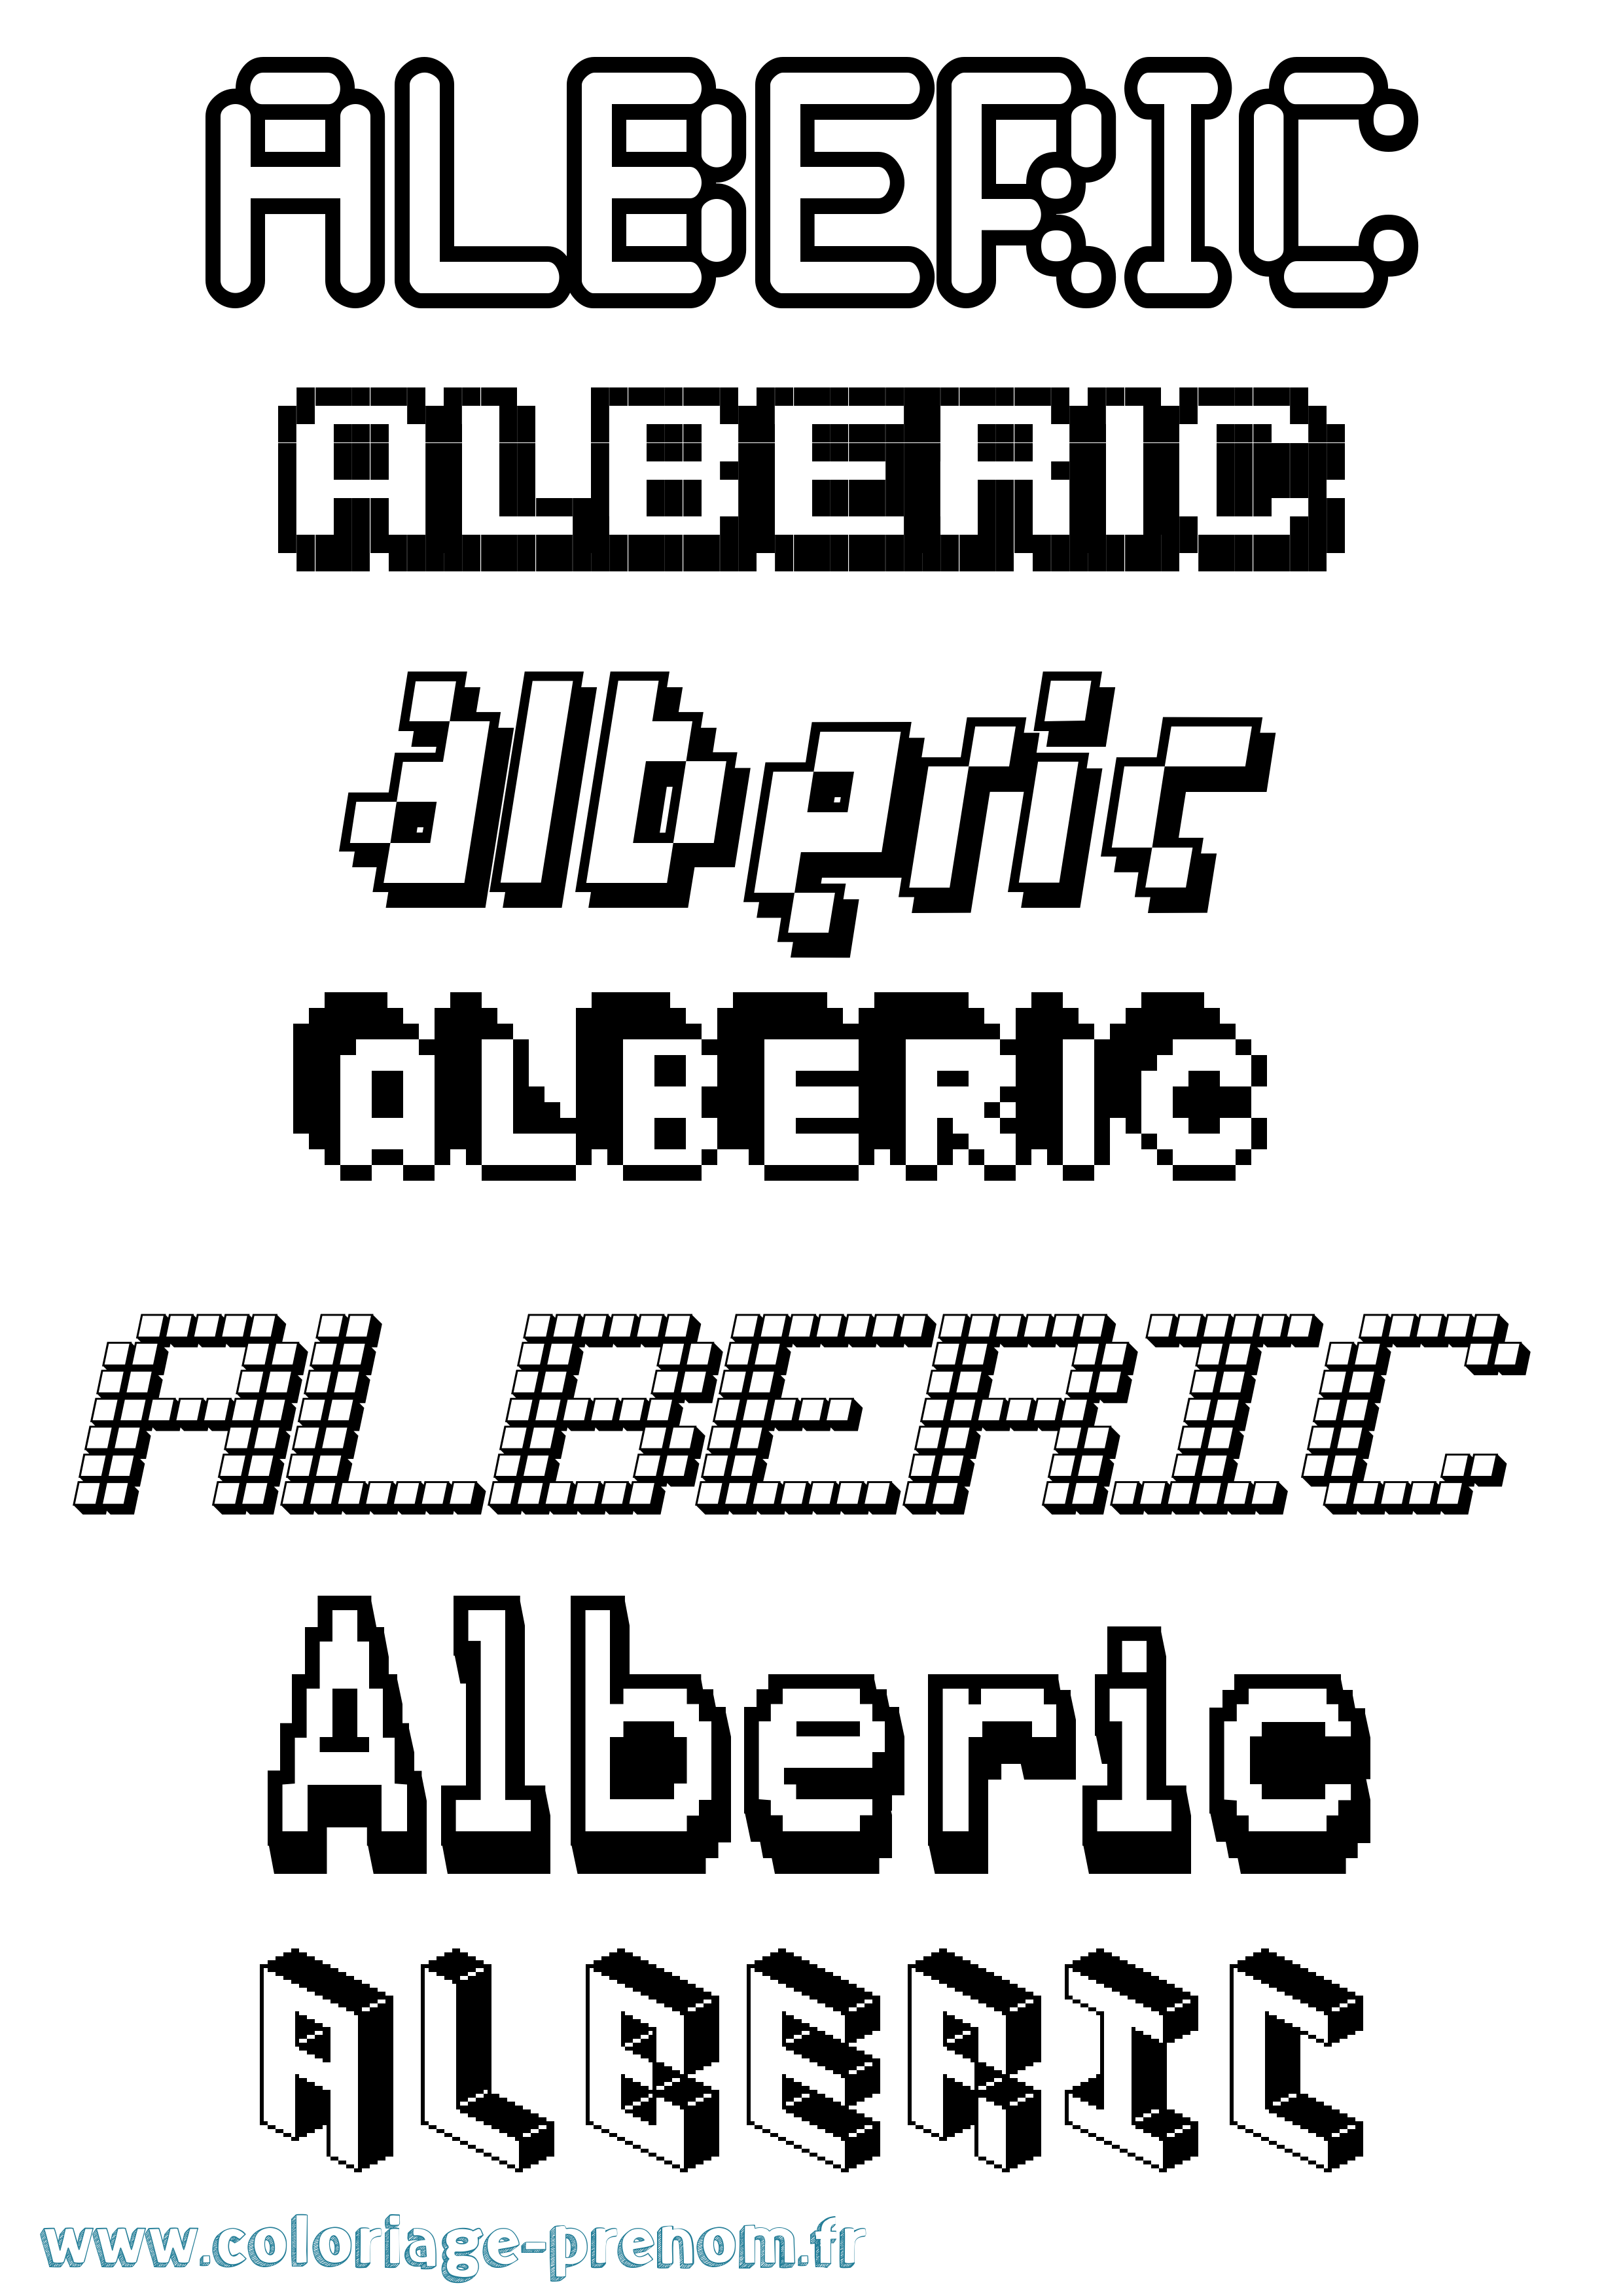 Coloriage prénom Alberic Pixel